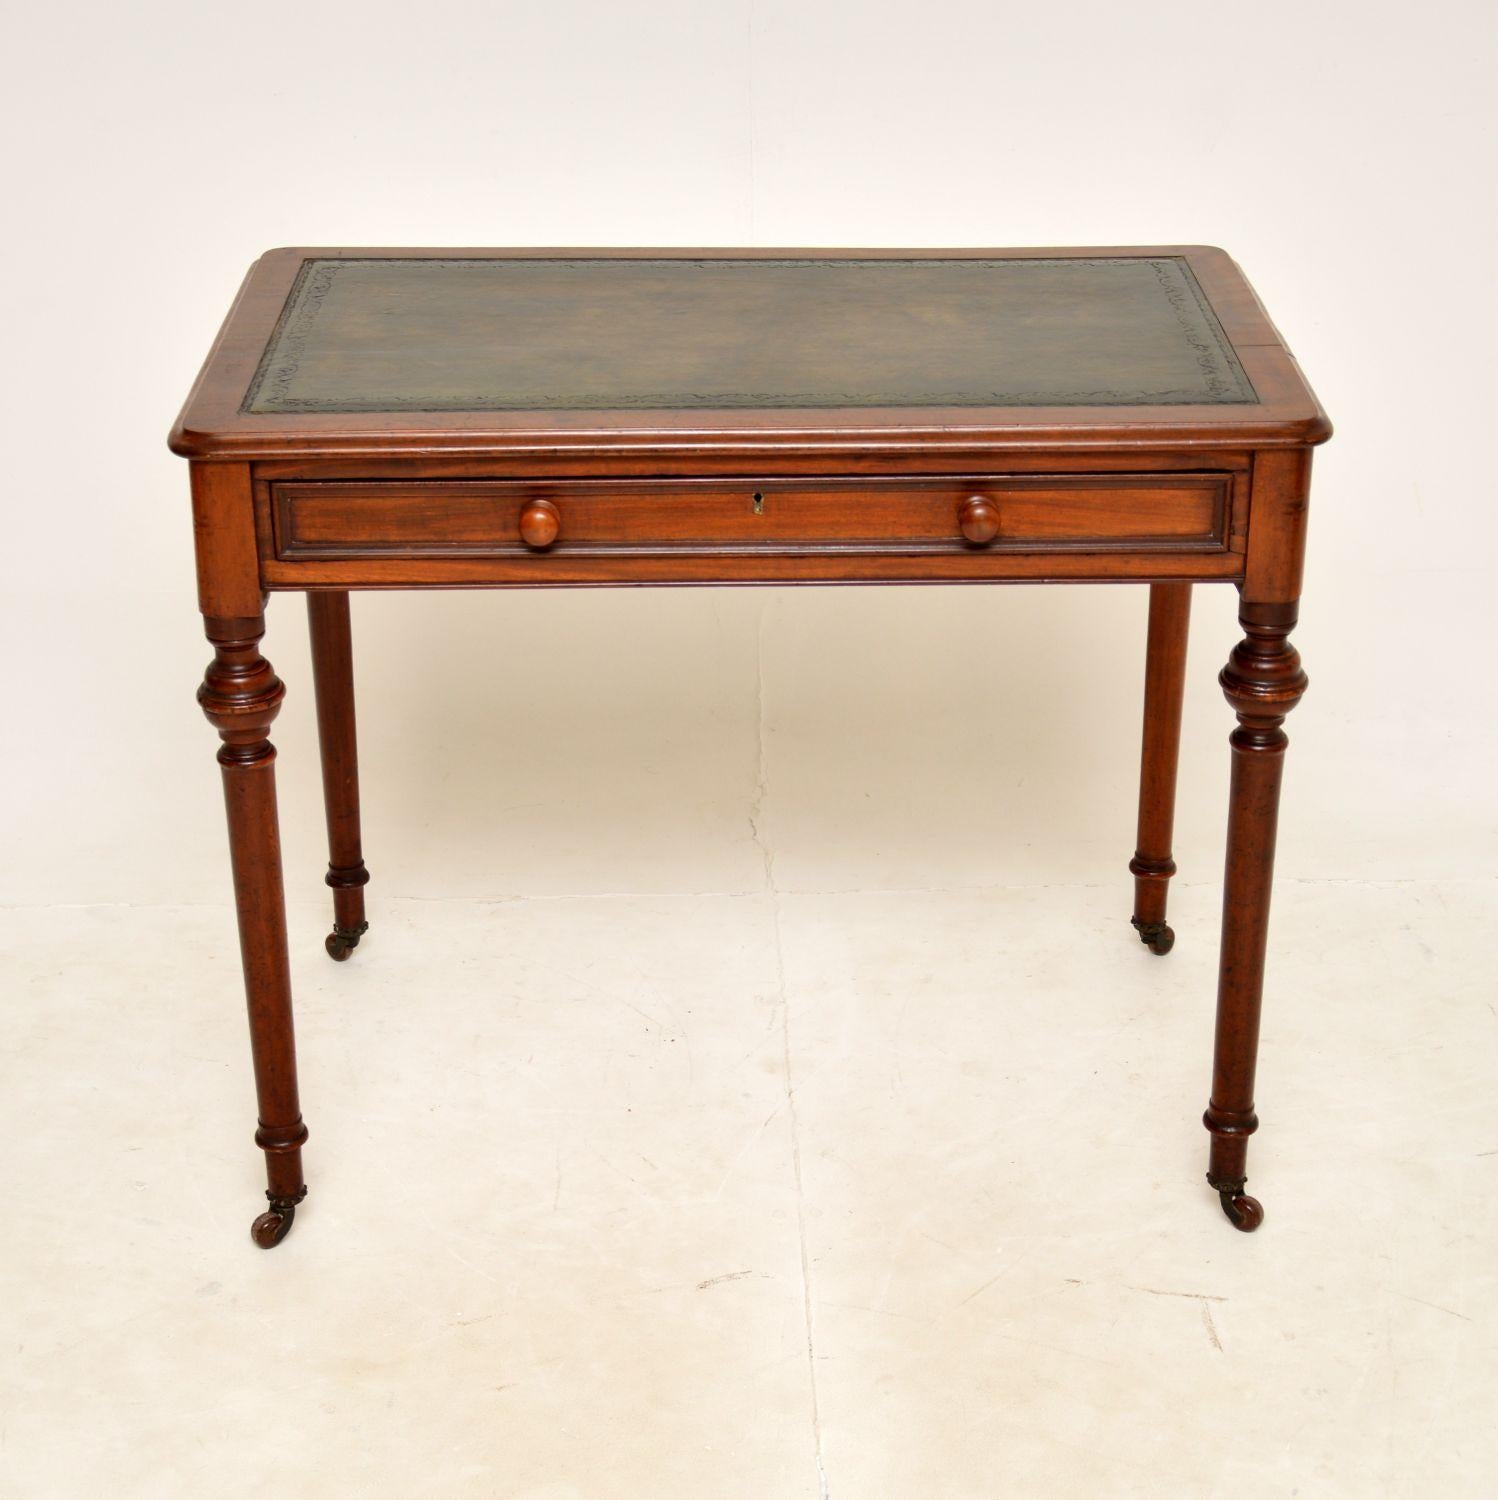 Ein eleganter und sehr gut gemachter antiker Schreibtisch aus der viktorianischen Zeit. Sie wurde in England hergestellt und stammt aus der Zeit zwischen 1860 und 1880.

Er ist von hervorragender Qualität und hat eine sehr nützliche Größe. Das